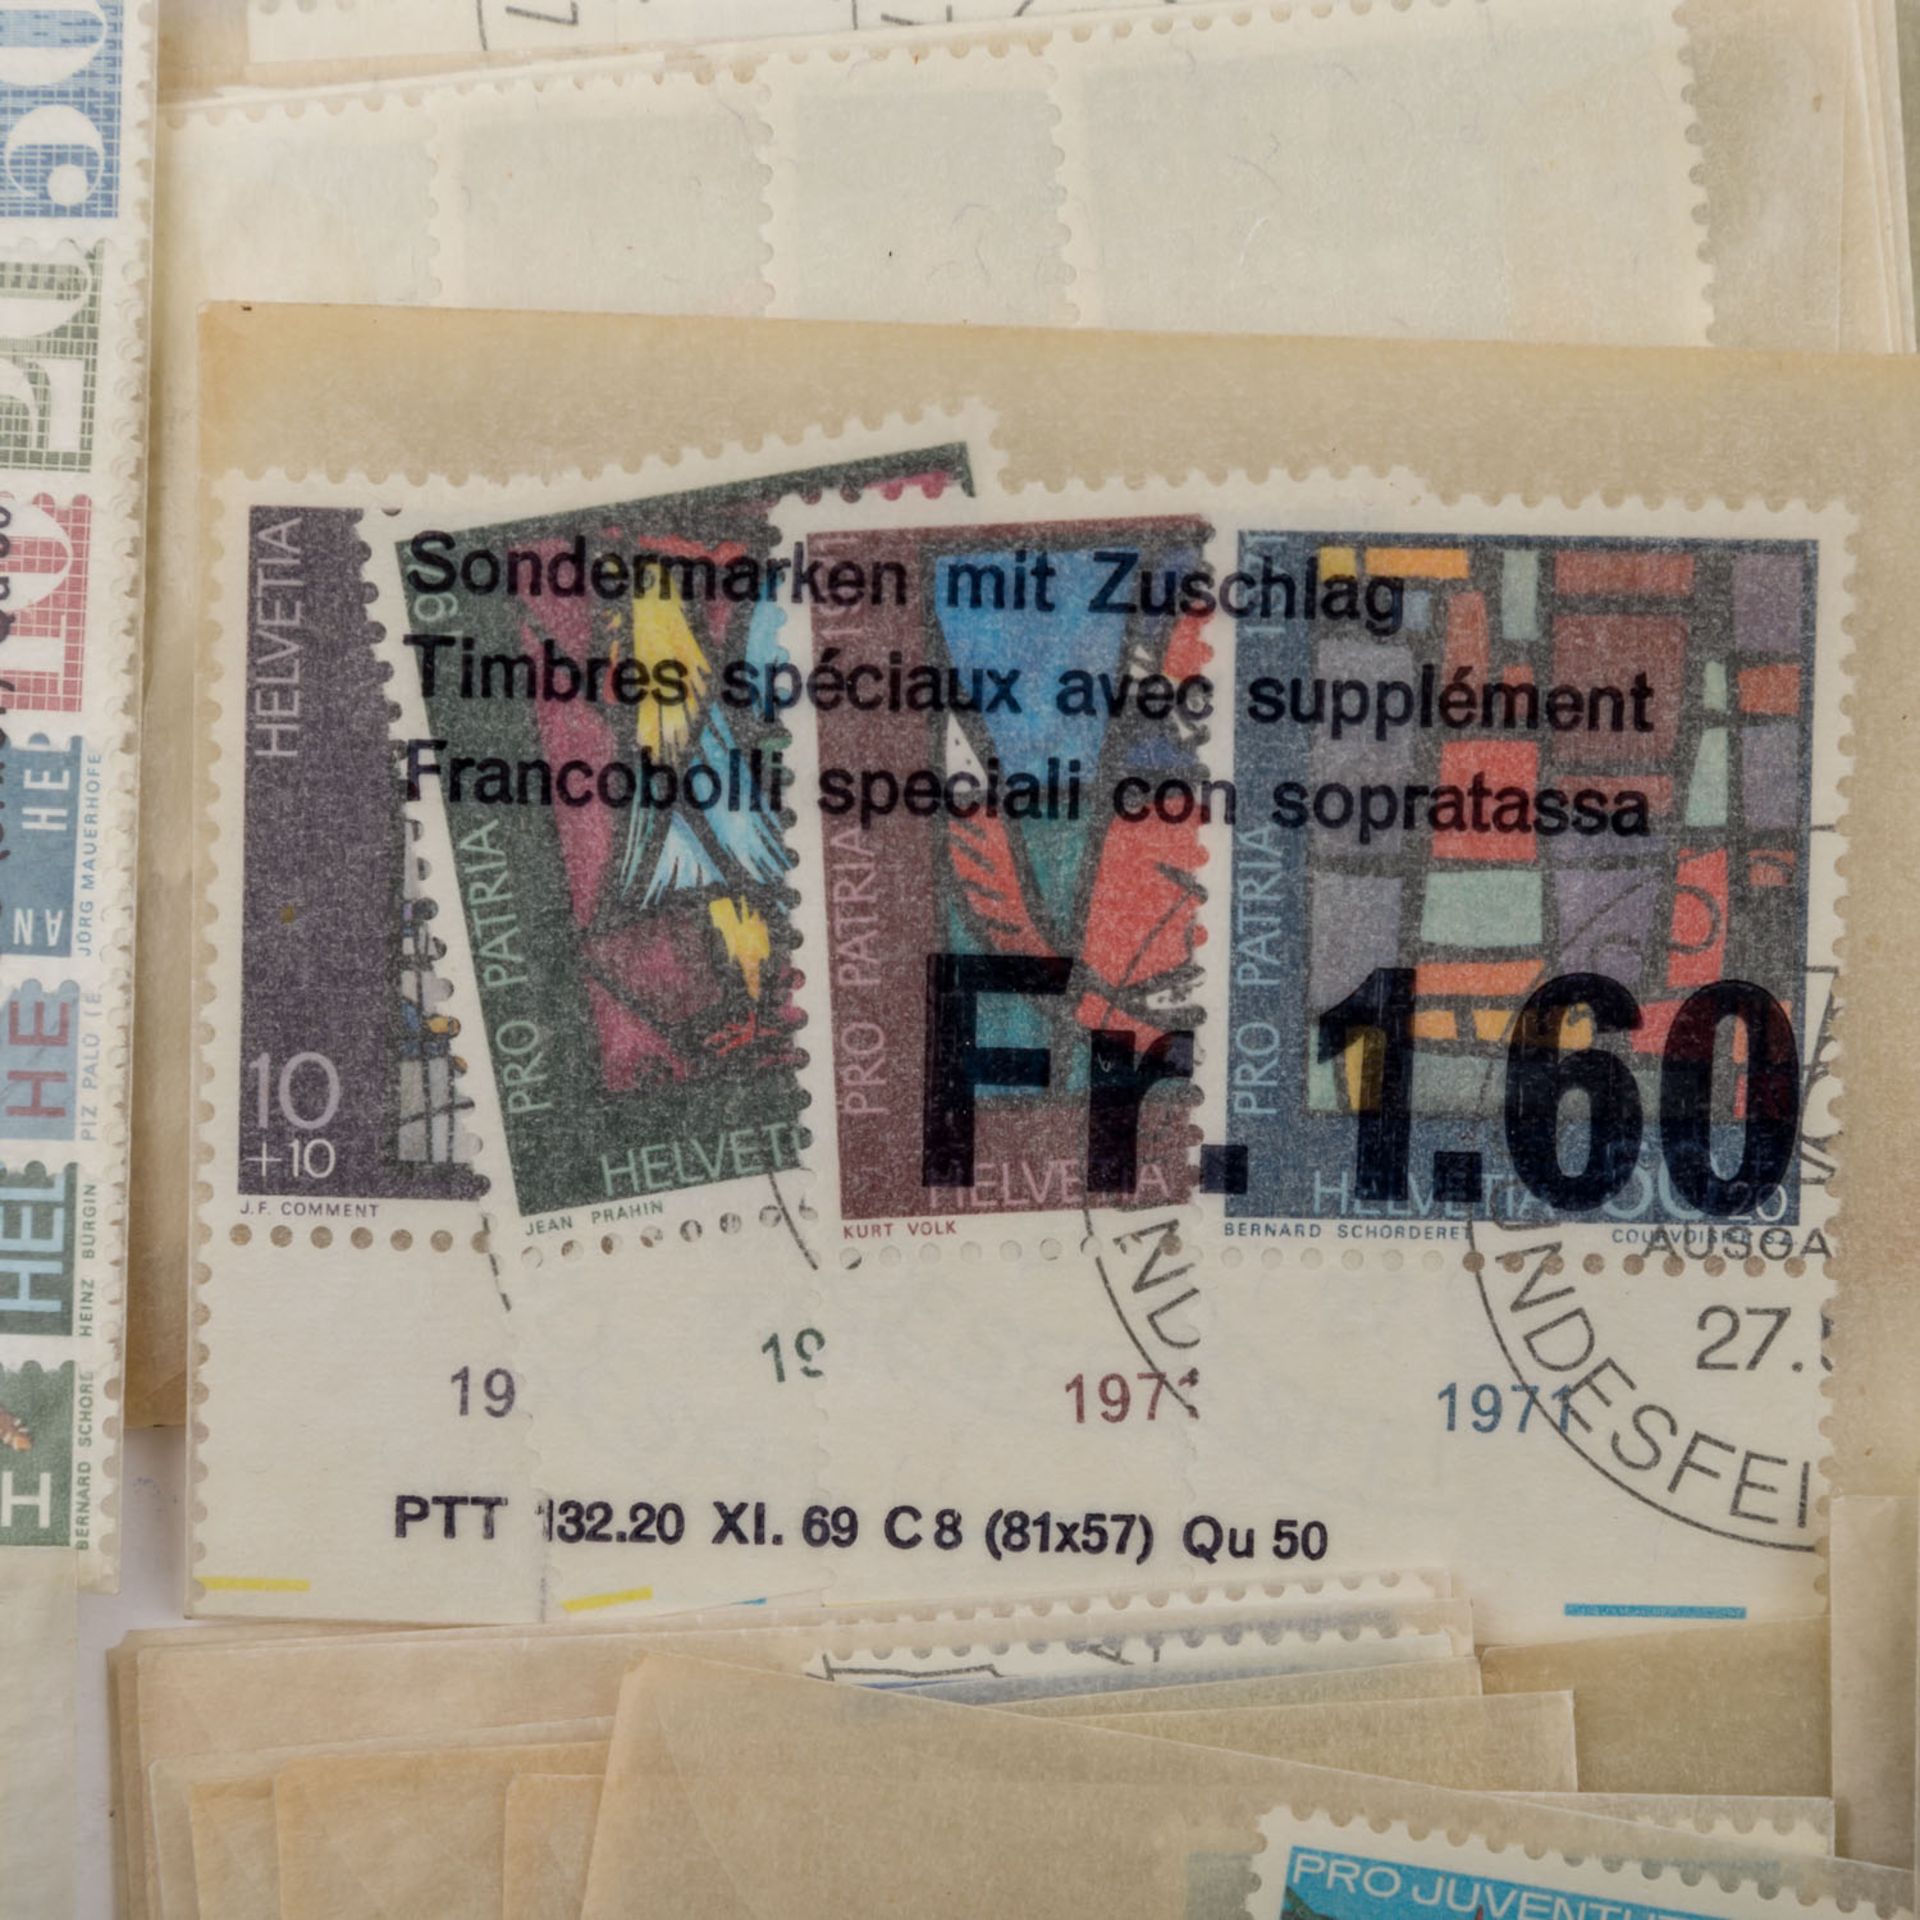 Schweiz - Posten postfrischer Markenin originalen Abo Tütchen.Switzerland, mnh convolute. - Bild 3 aus 6